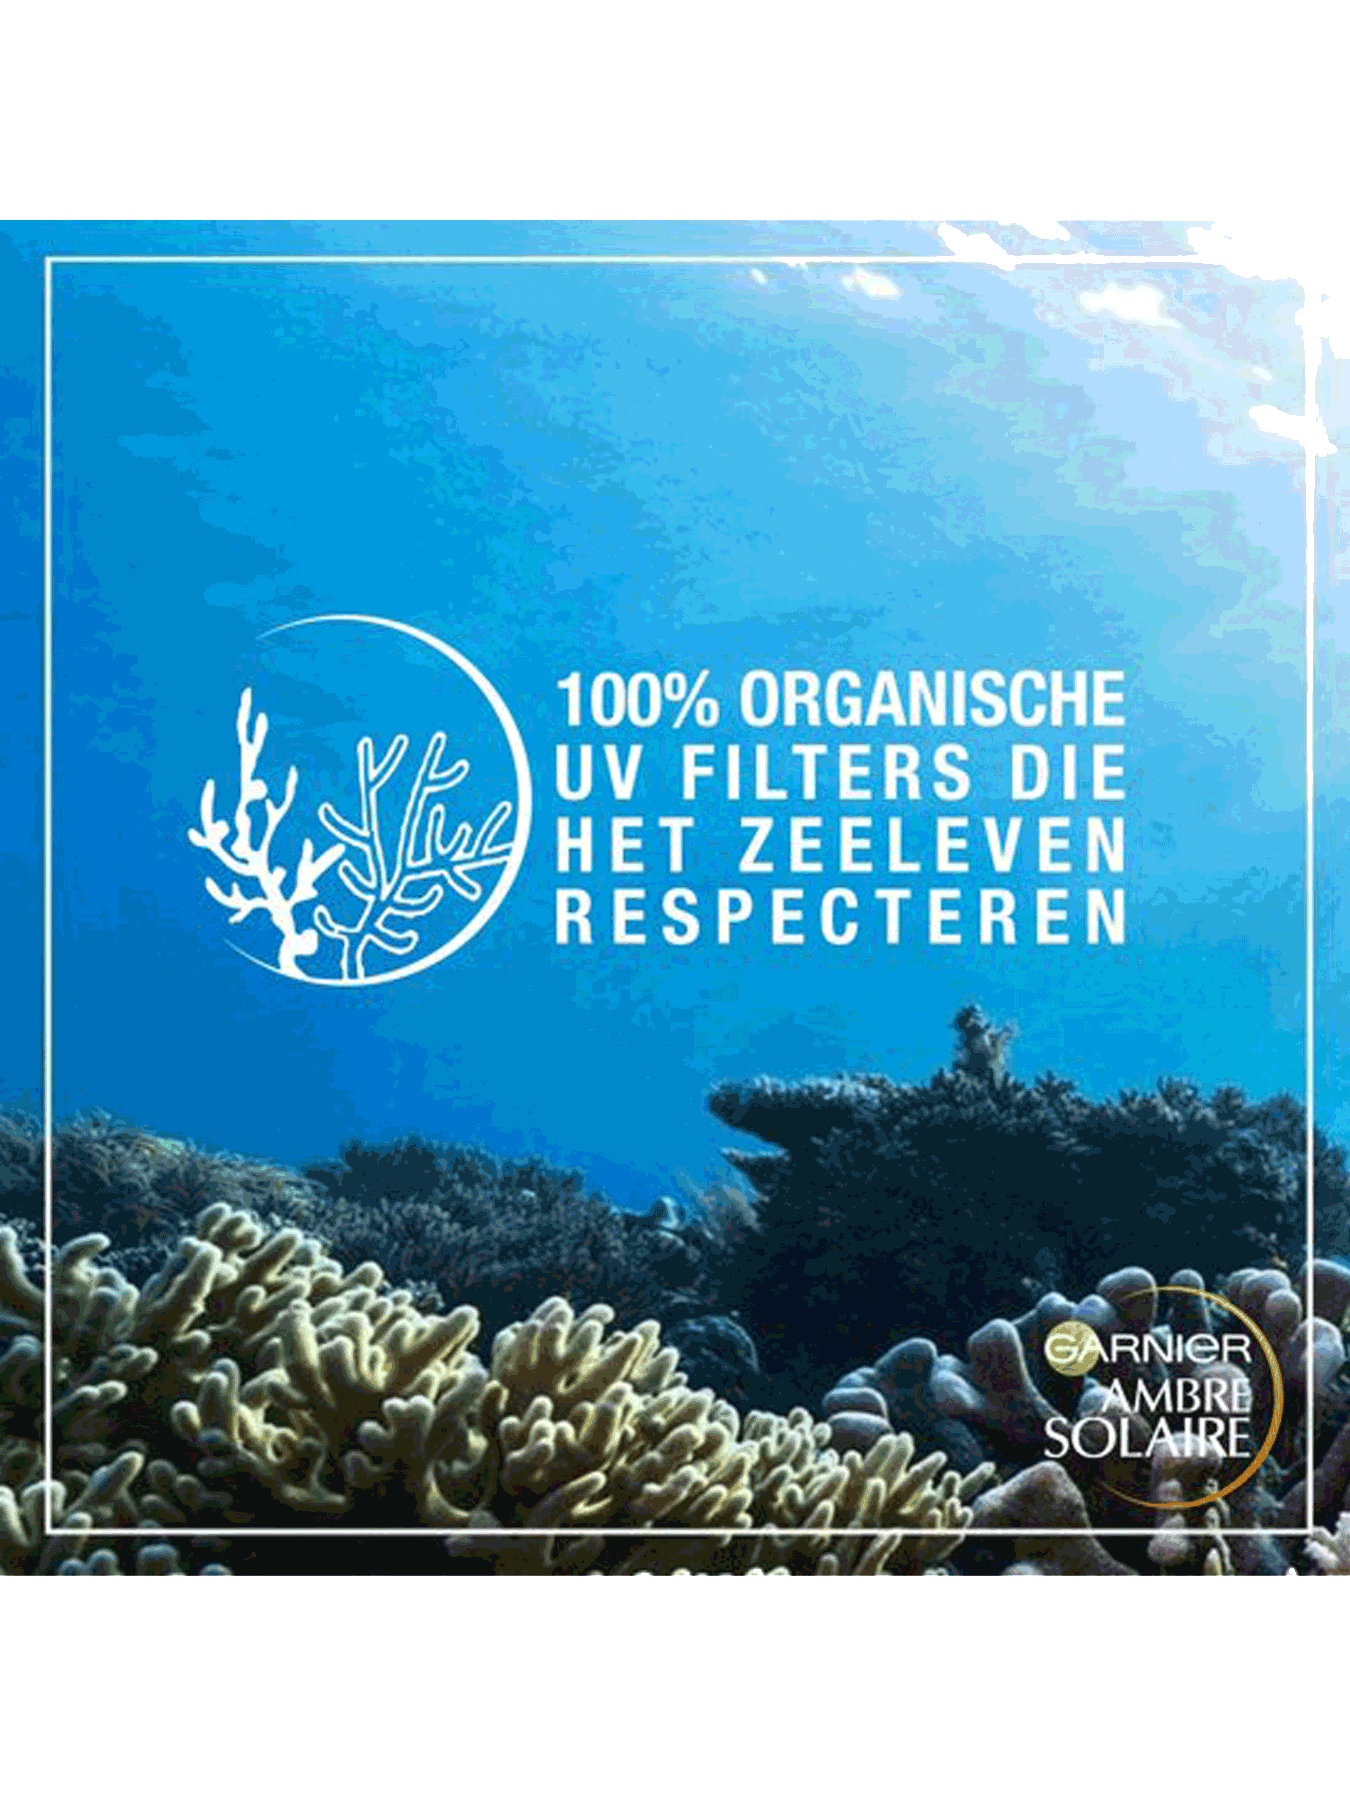 100% organische UV filter die het zeeleven respecteren